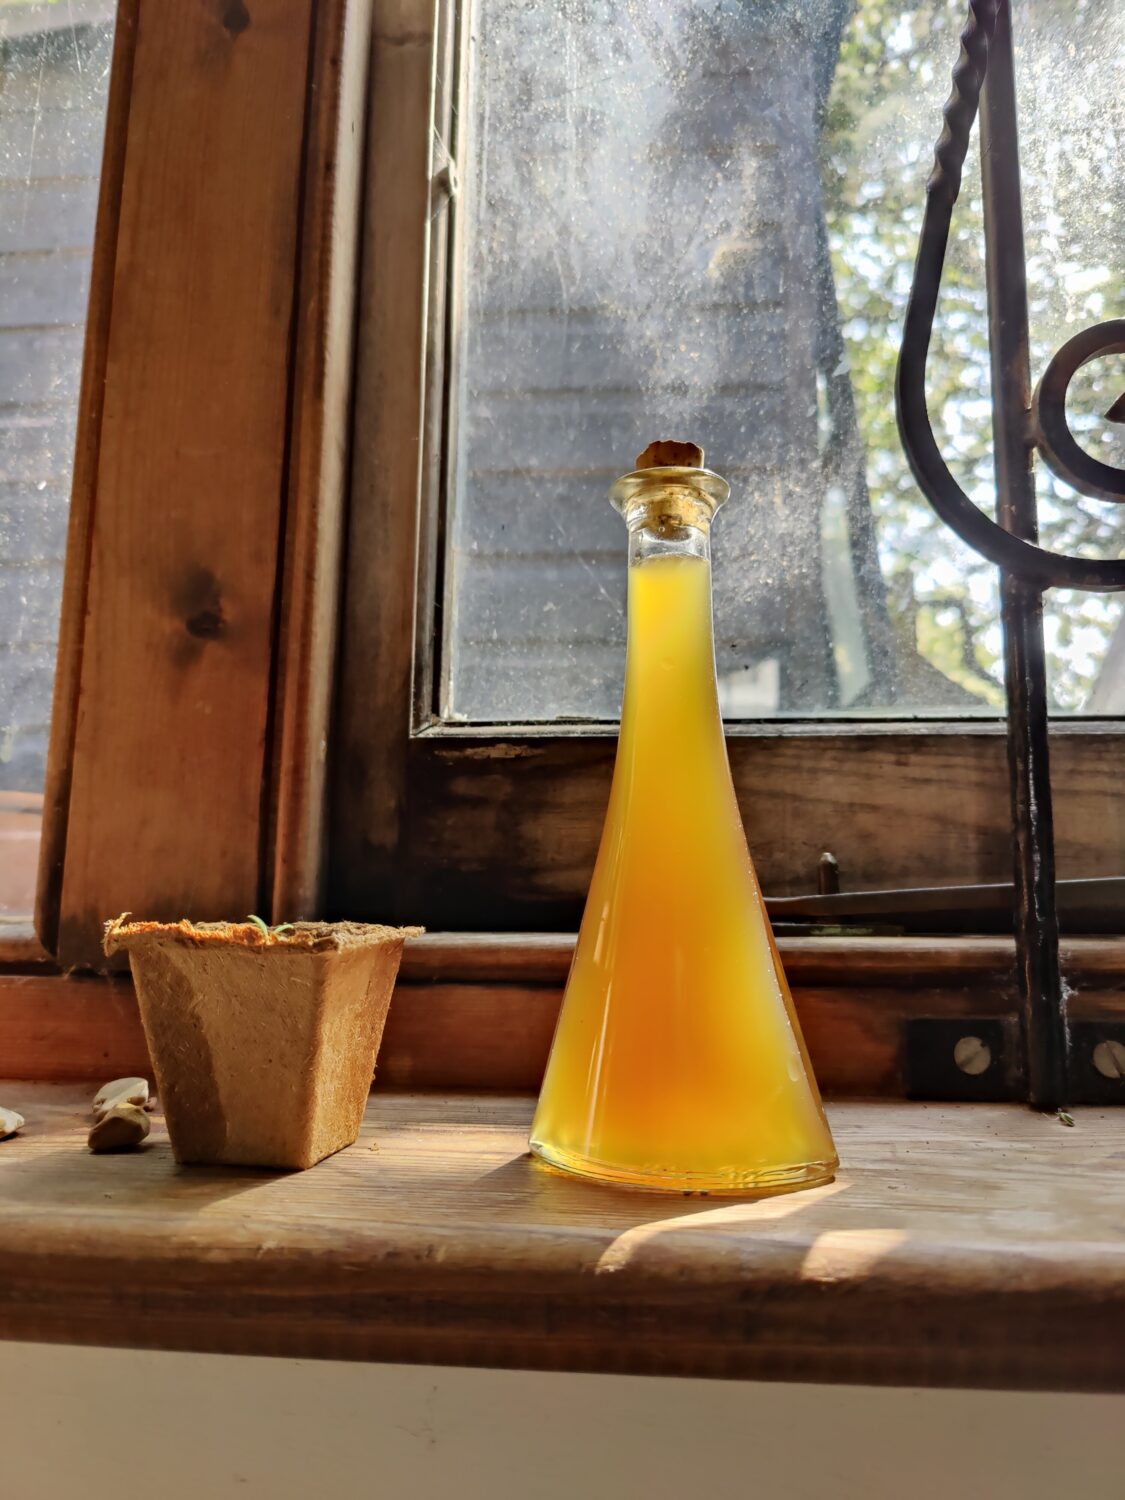 Olive-leaf oxymel, with apple cider vinegar and honey